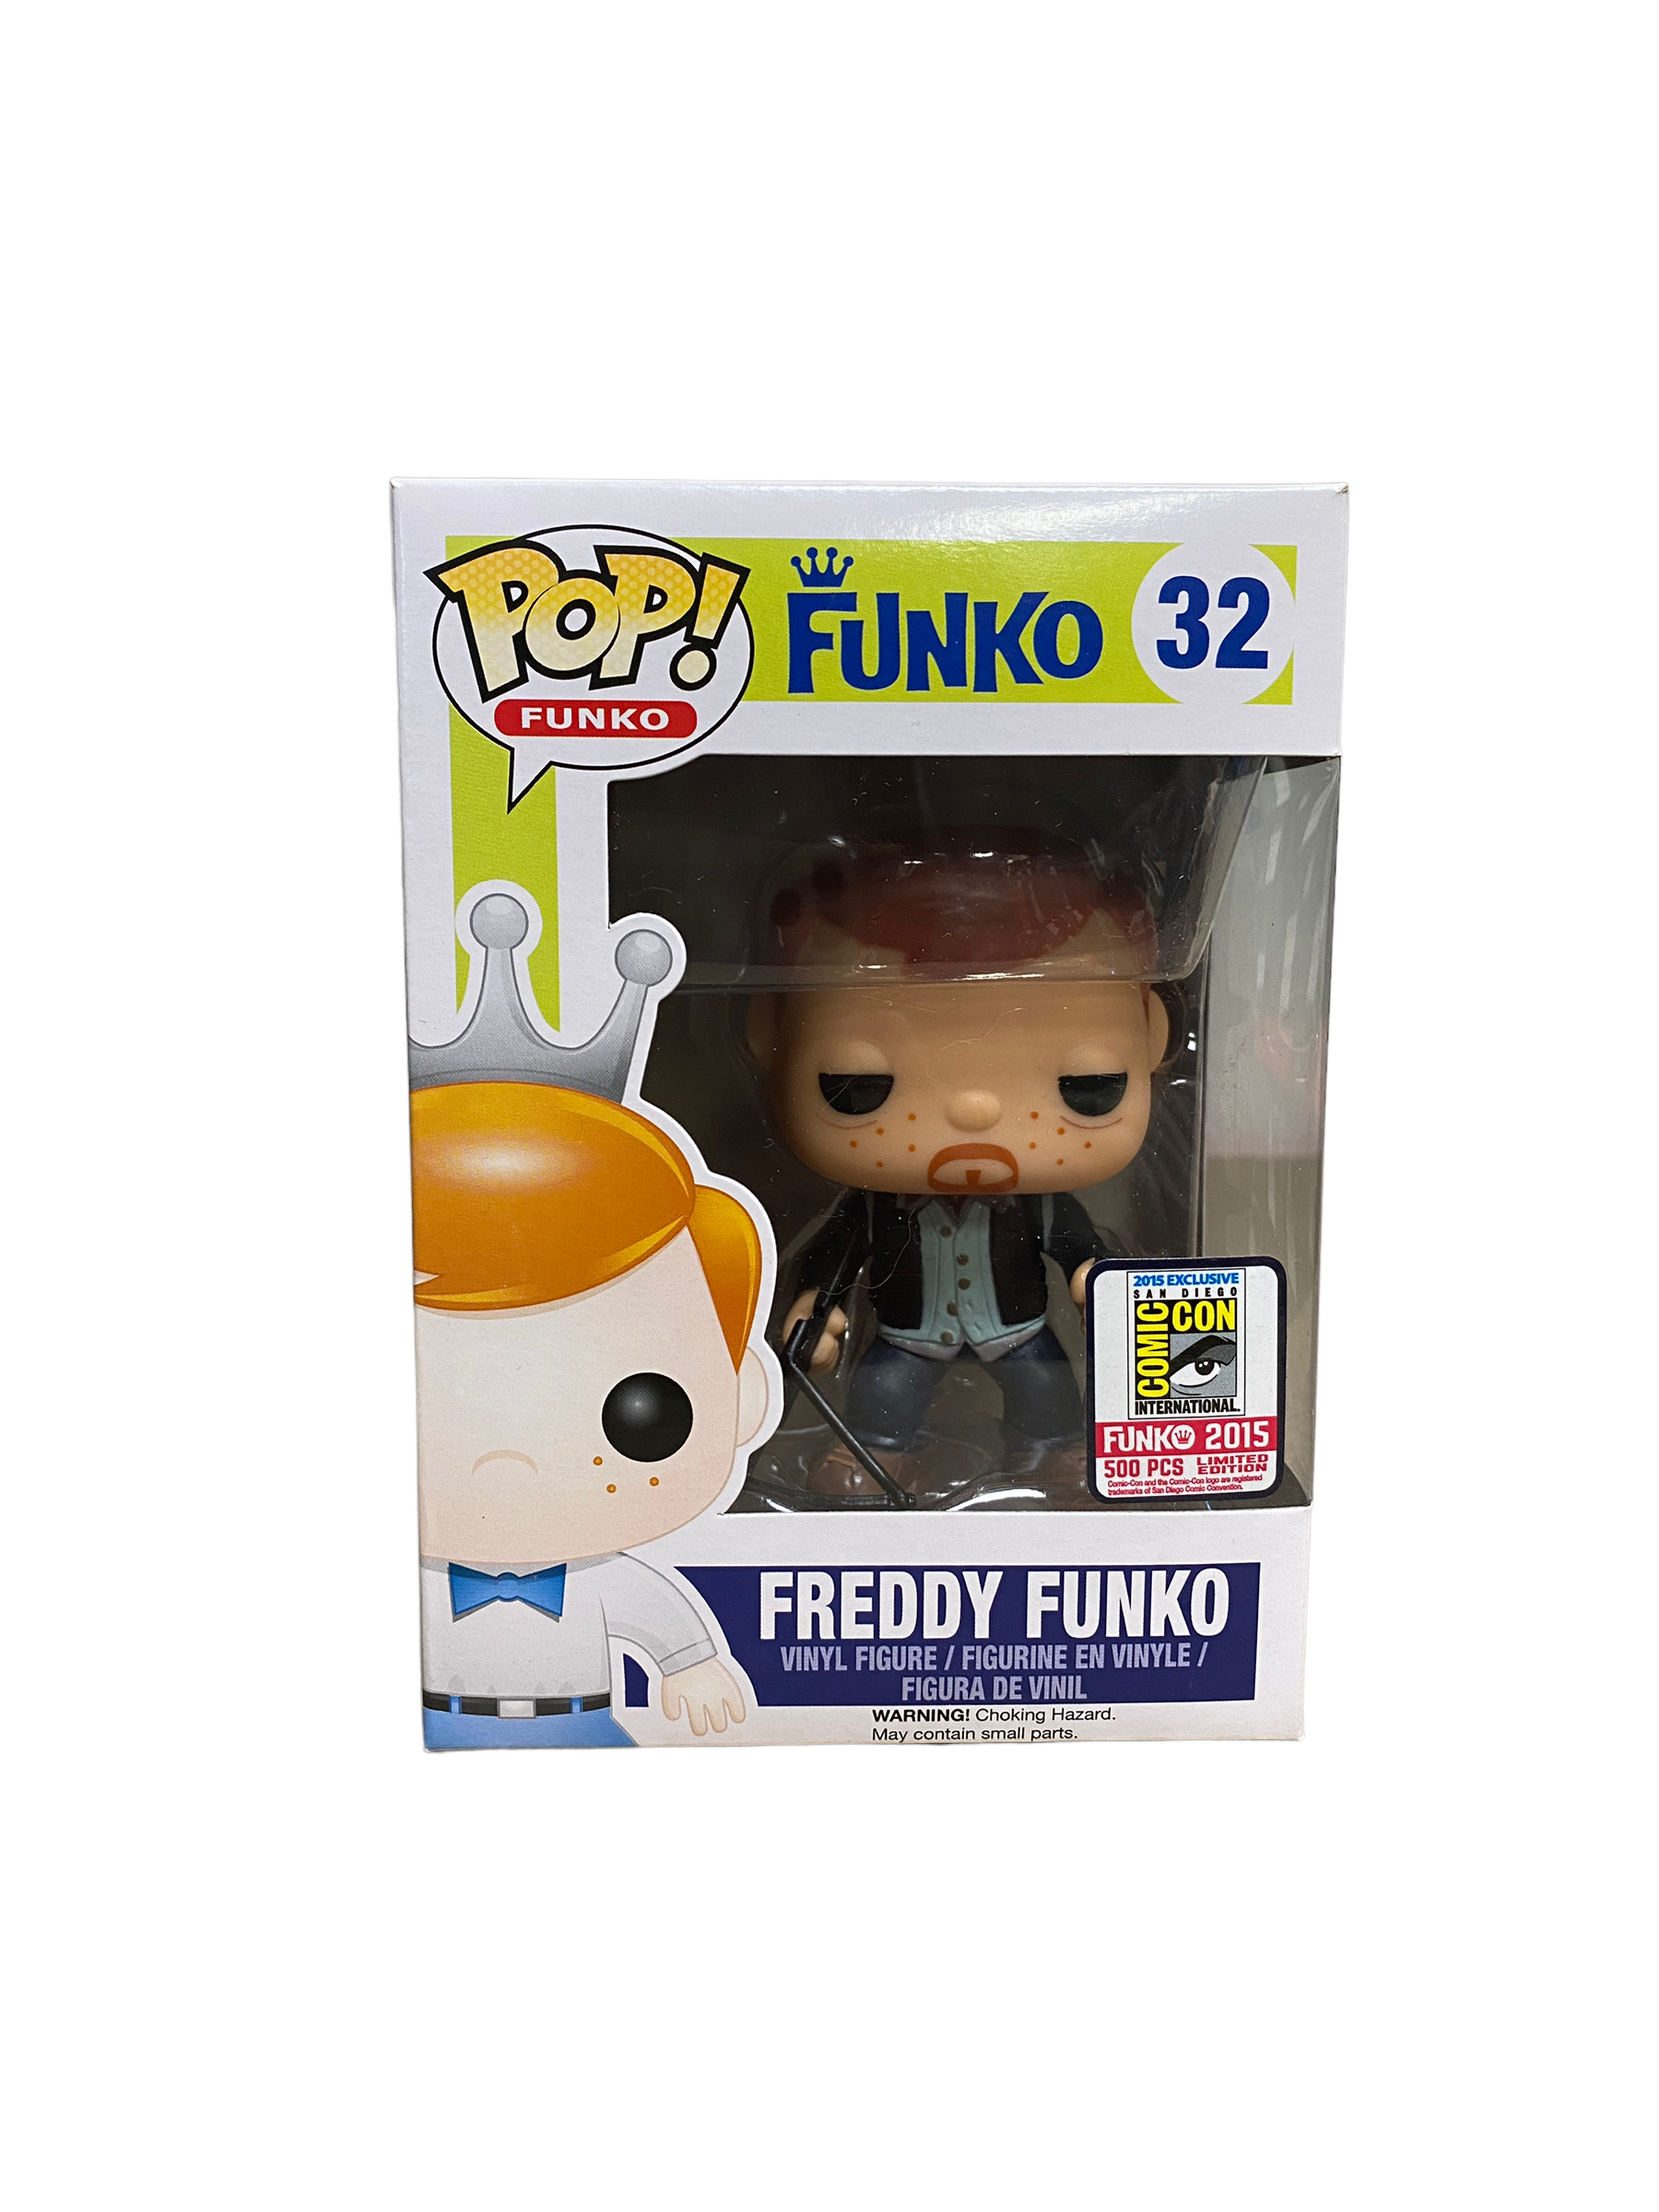 Freddy Funko as Daryl Dixon #32 Funko Pop! - SDCC 2015 Exclusive LE500 Pcs - Condition 8.75/10